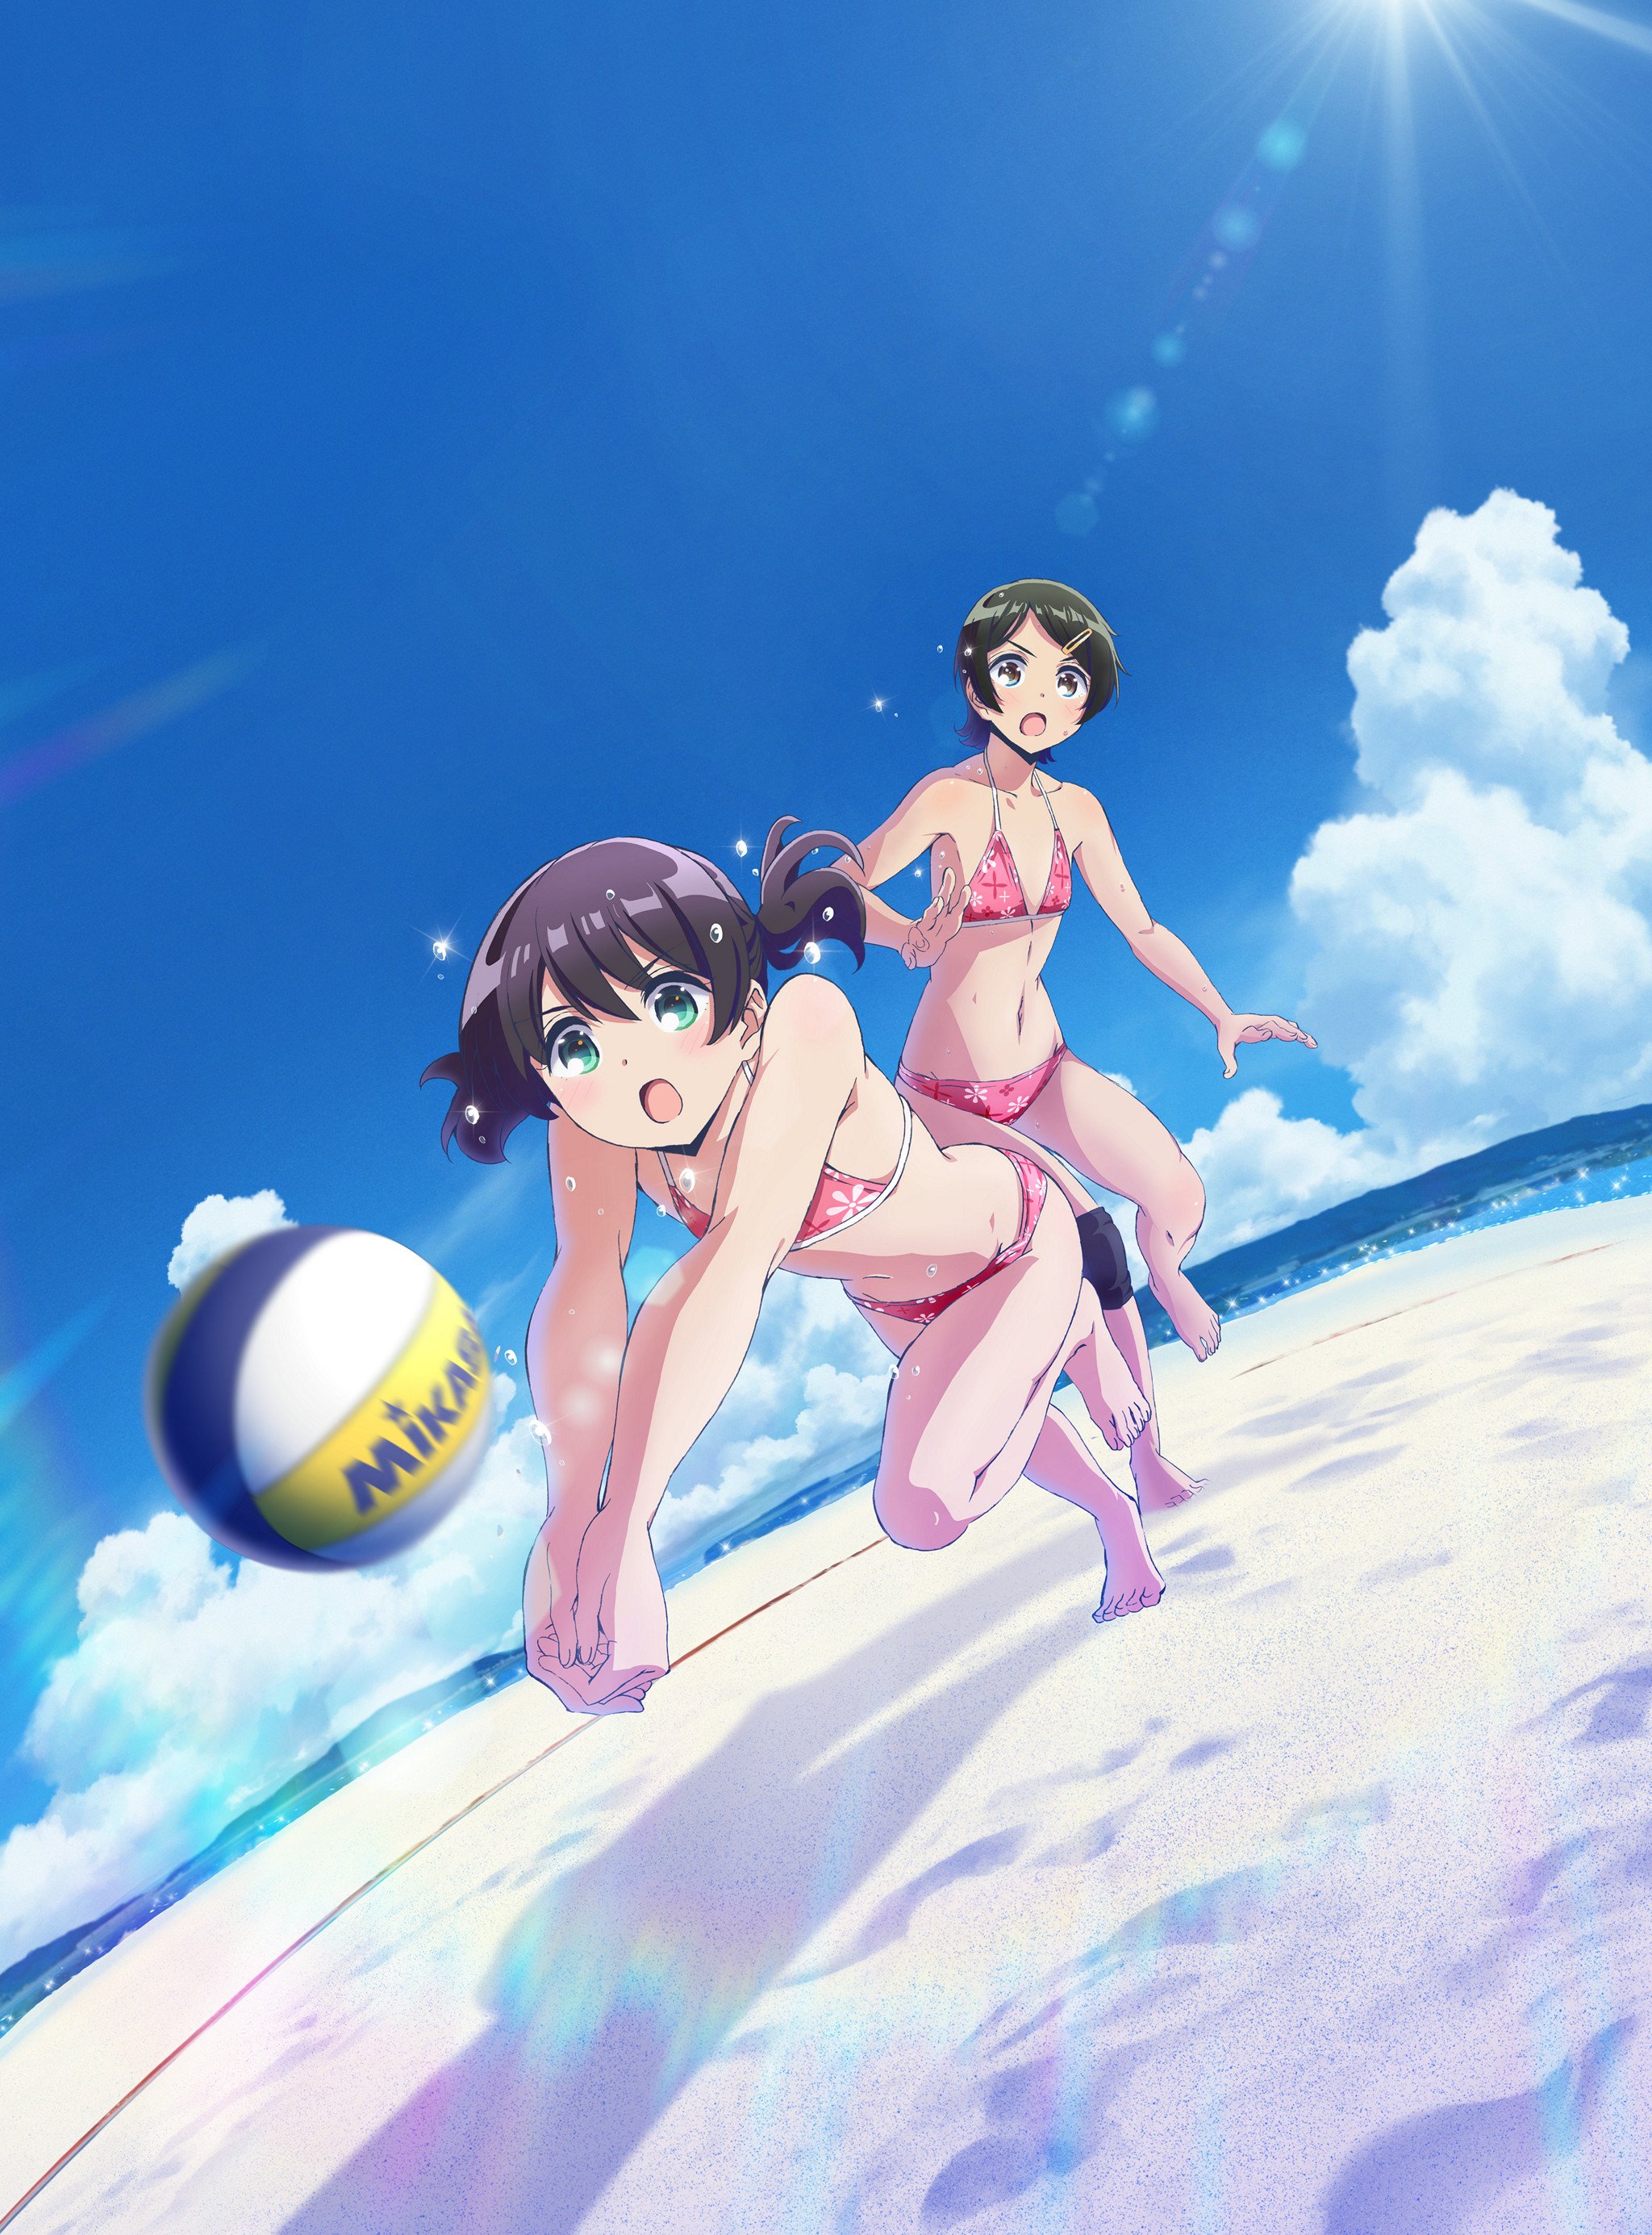 Harukana Receive Anime's 'Pair Visual' Shows Naruasa Team - News - Anime  News Network